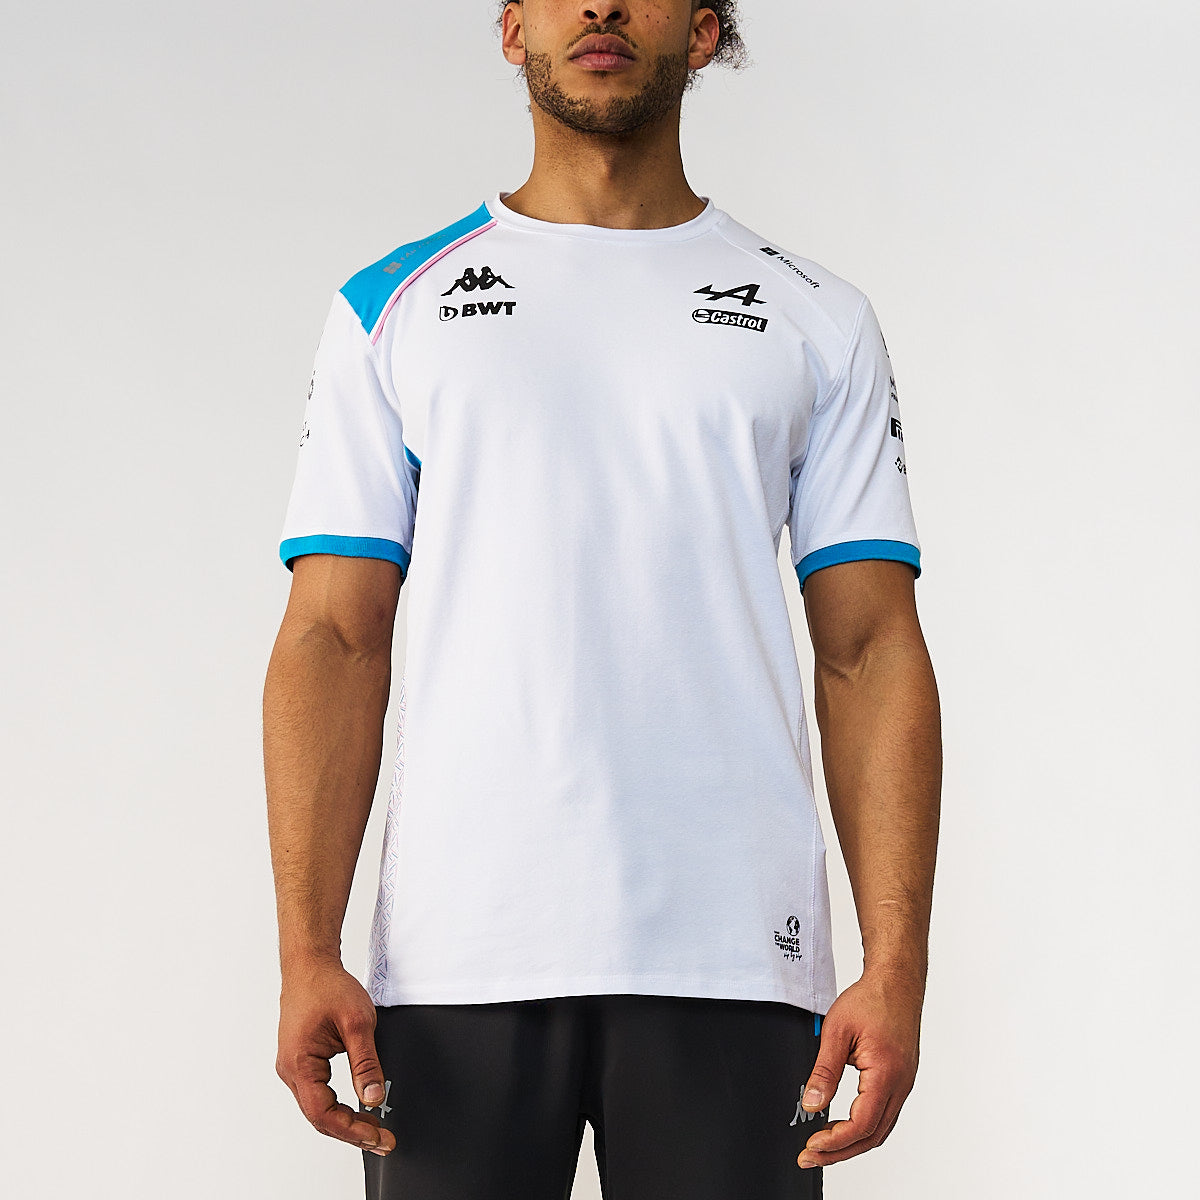 Camiseta Amiry Alpine F1 Blanco Hombre